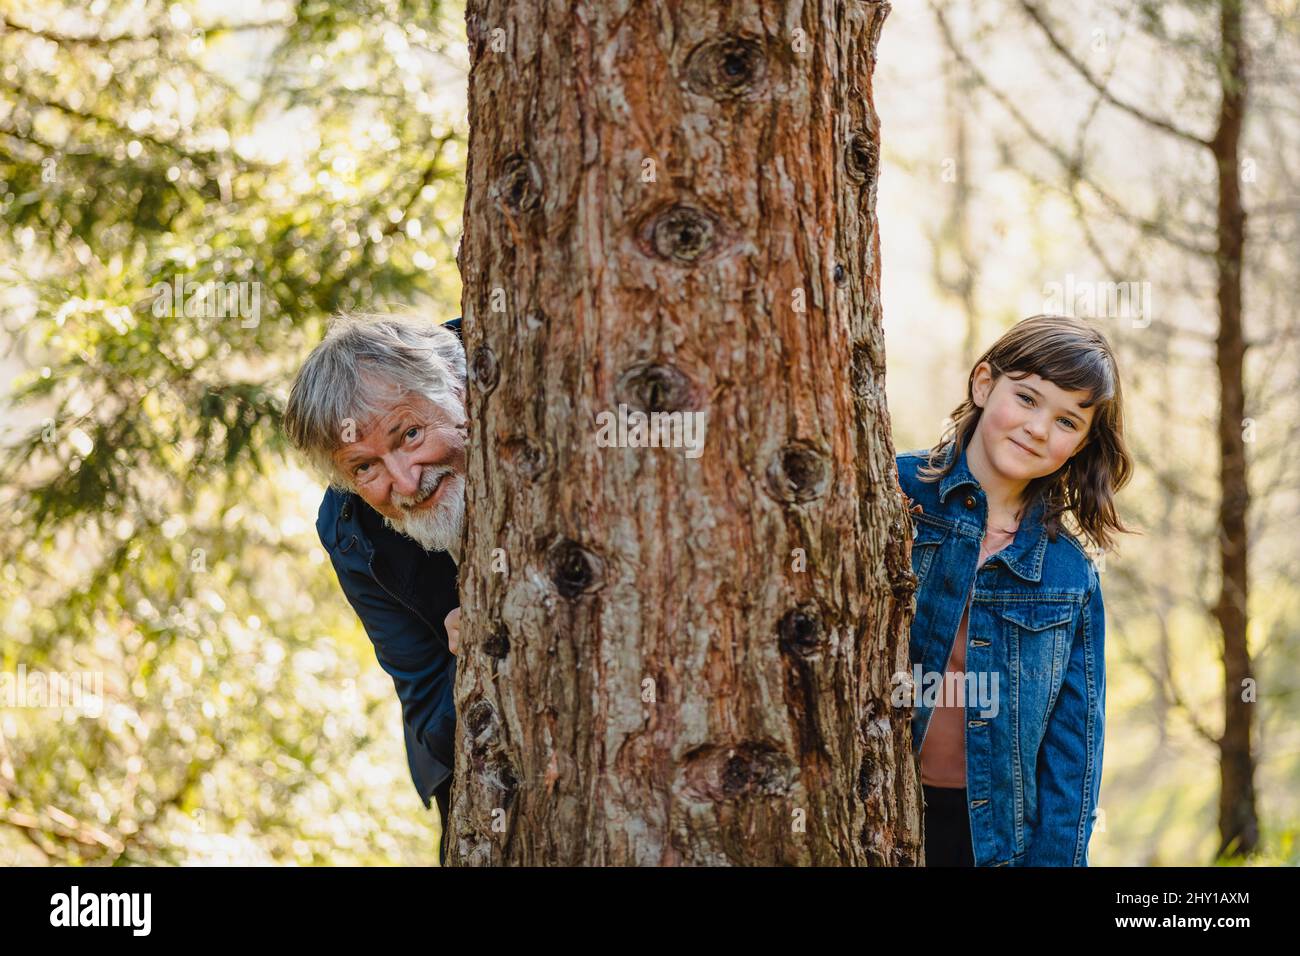 Nonno anziano positivo con capelli grigi e barba con bambina sorridente in giacca denim che si nasconde dietro l'albero e guarda la macchina fotografica nella foresta su b Foto Stock